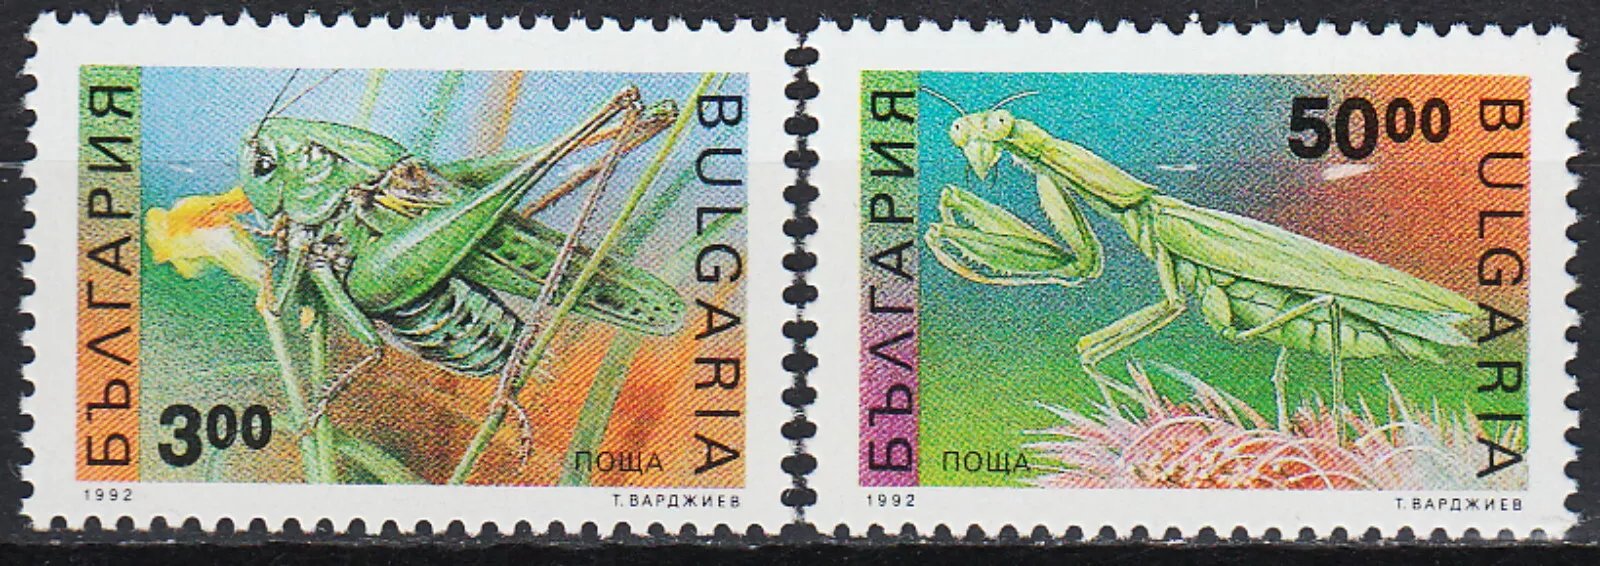 Bulgaria 1992 - Insecte, serie neuzata